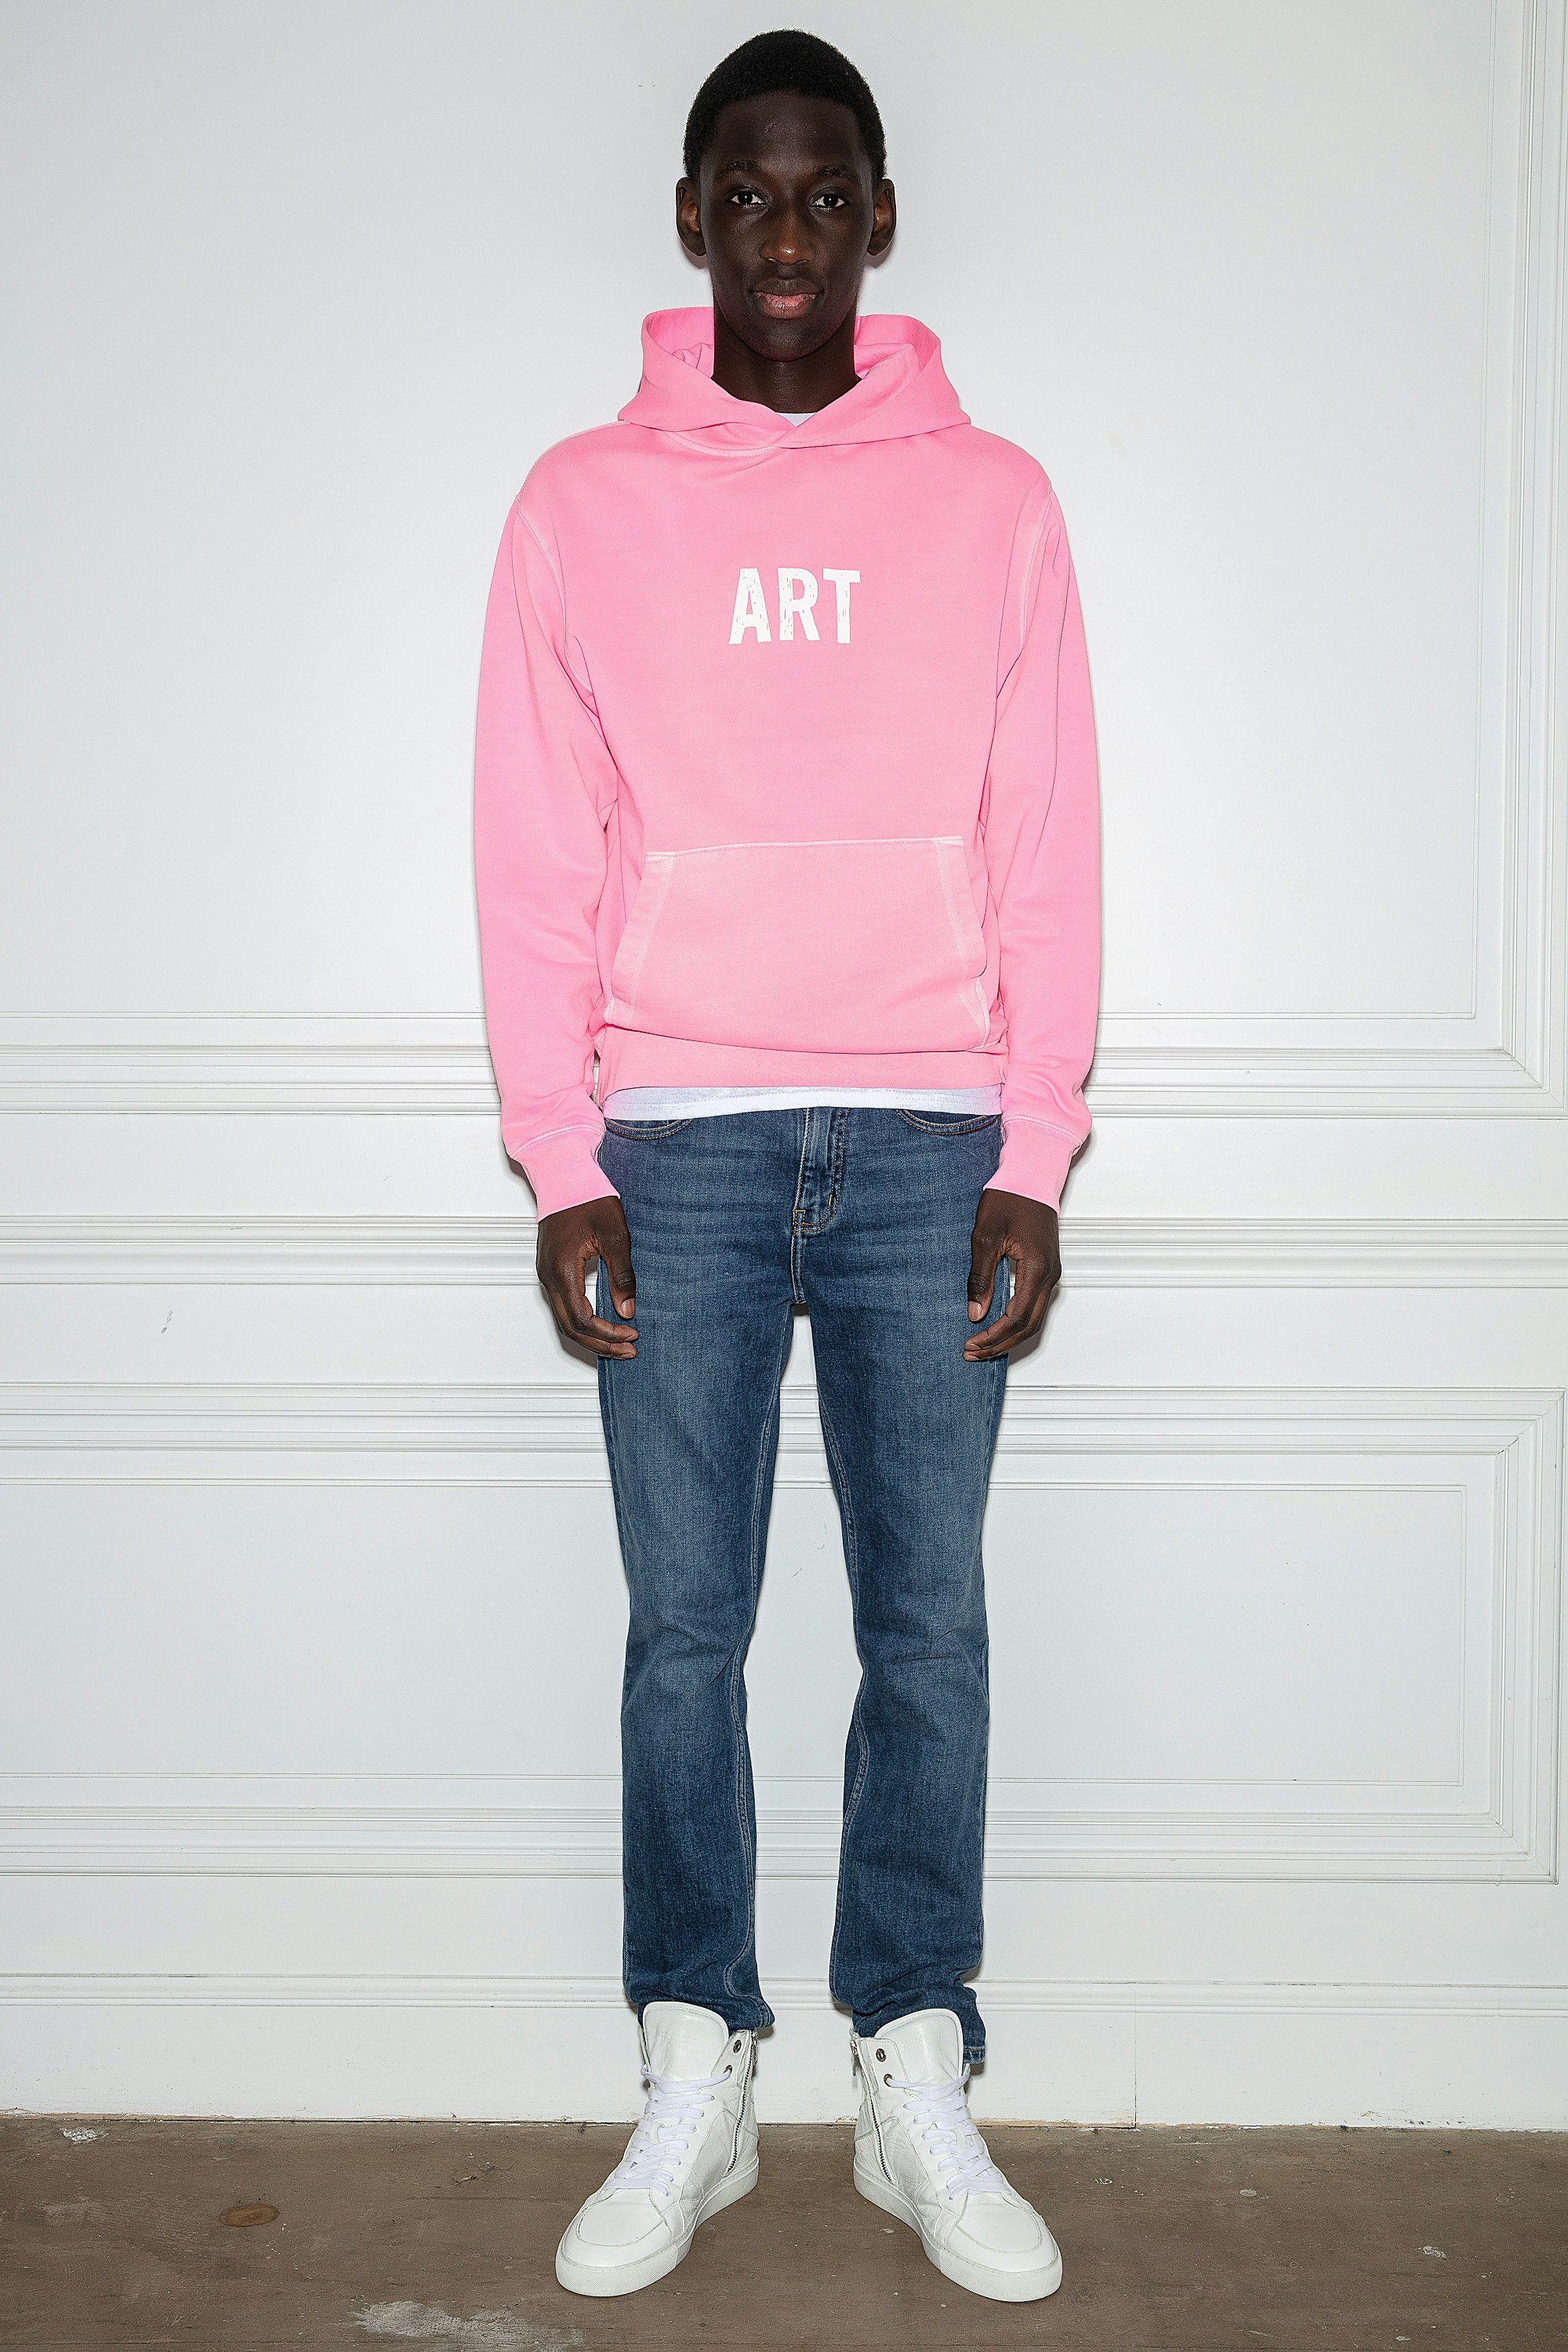 Sanchi Sweatshirt Men’s hoodie in pink cotton with “Art” slogan